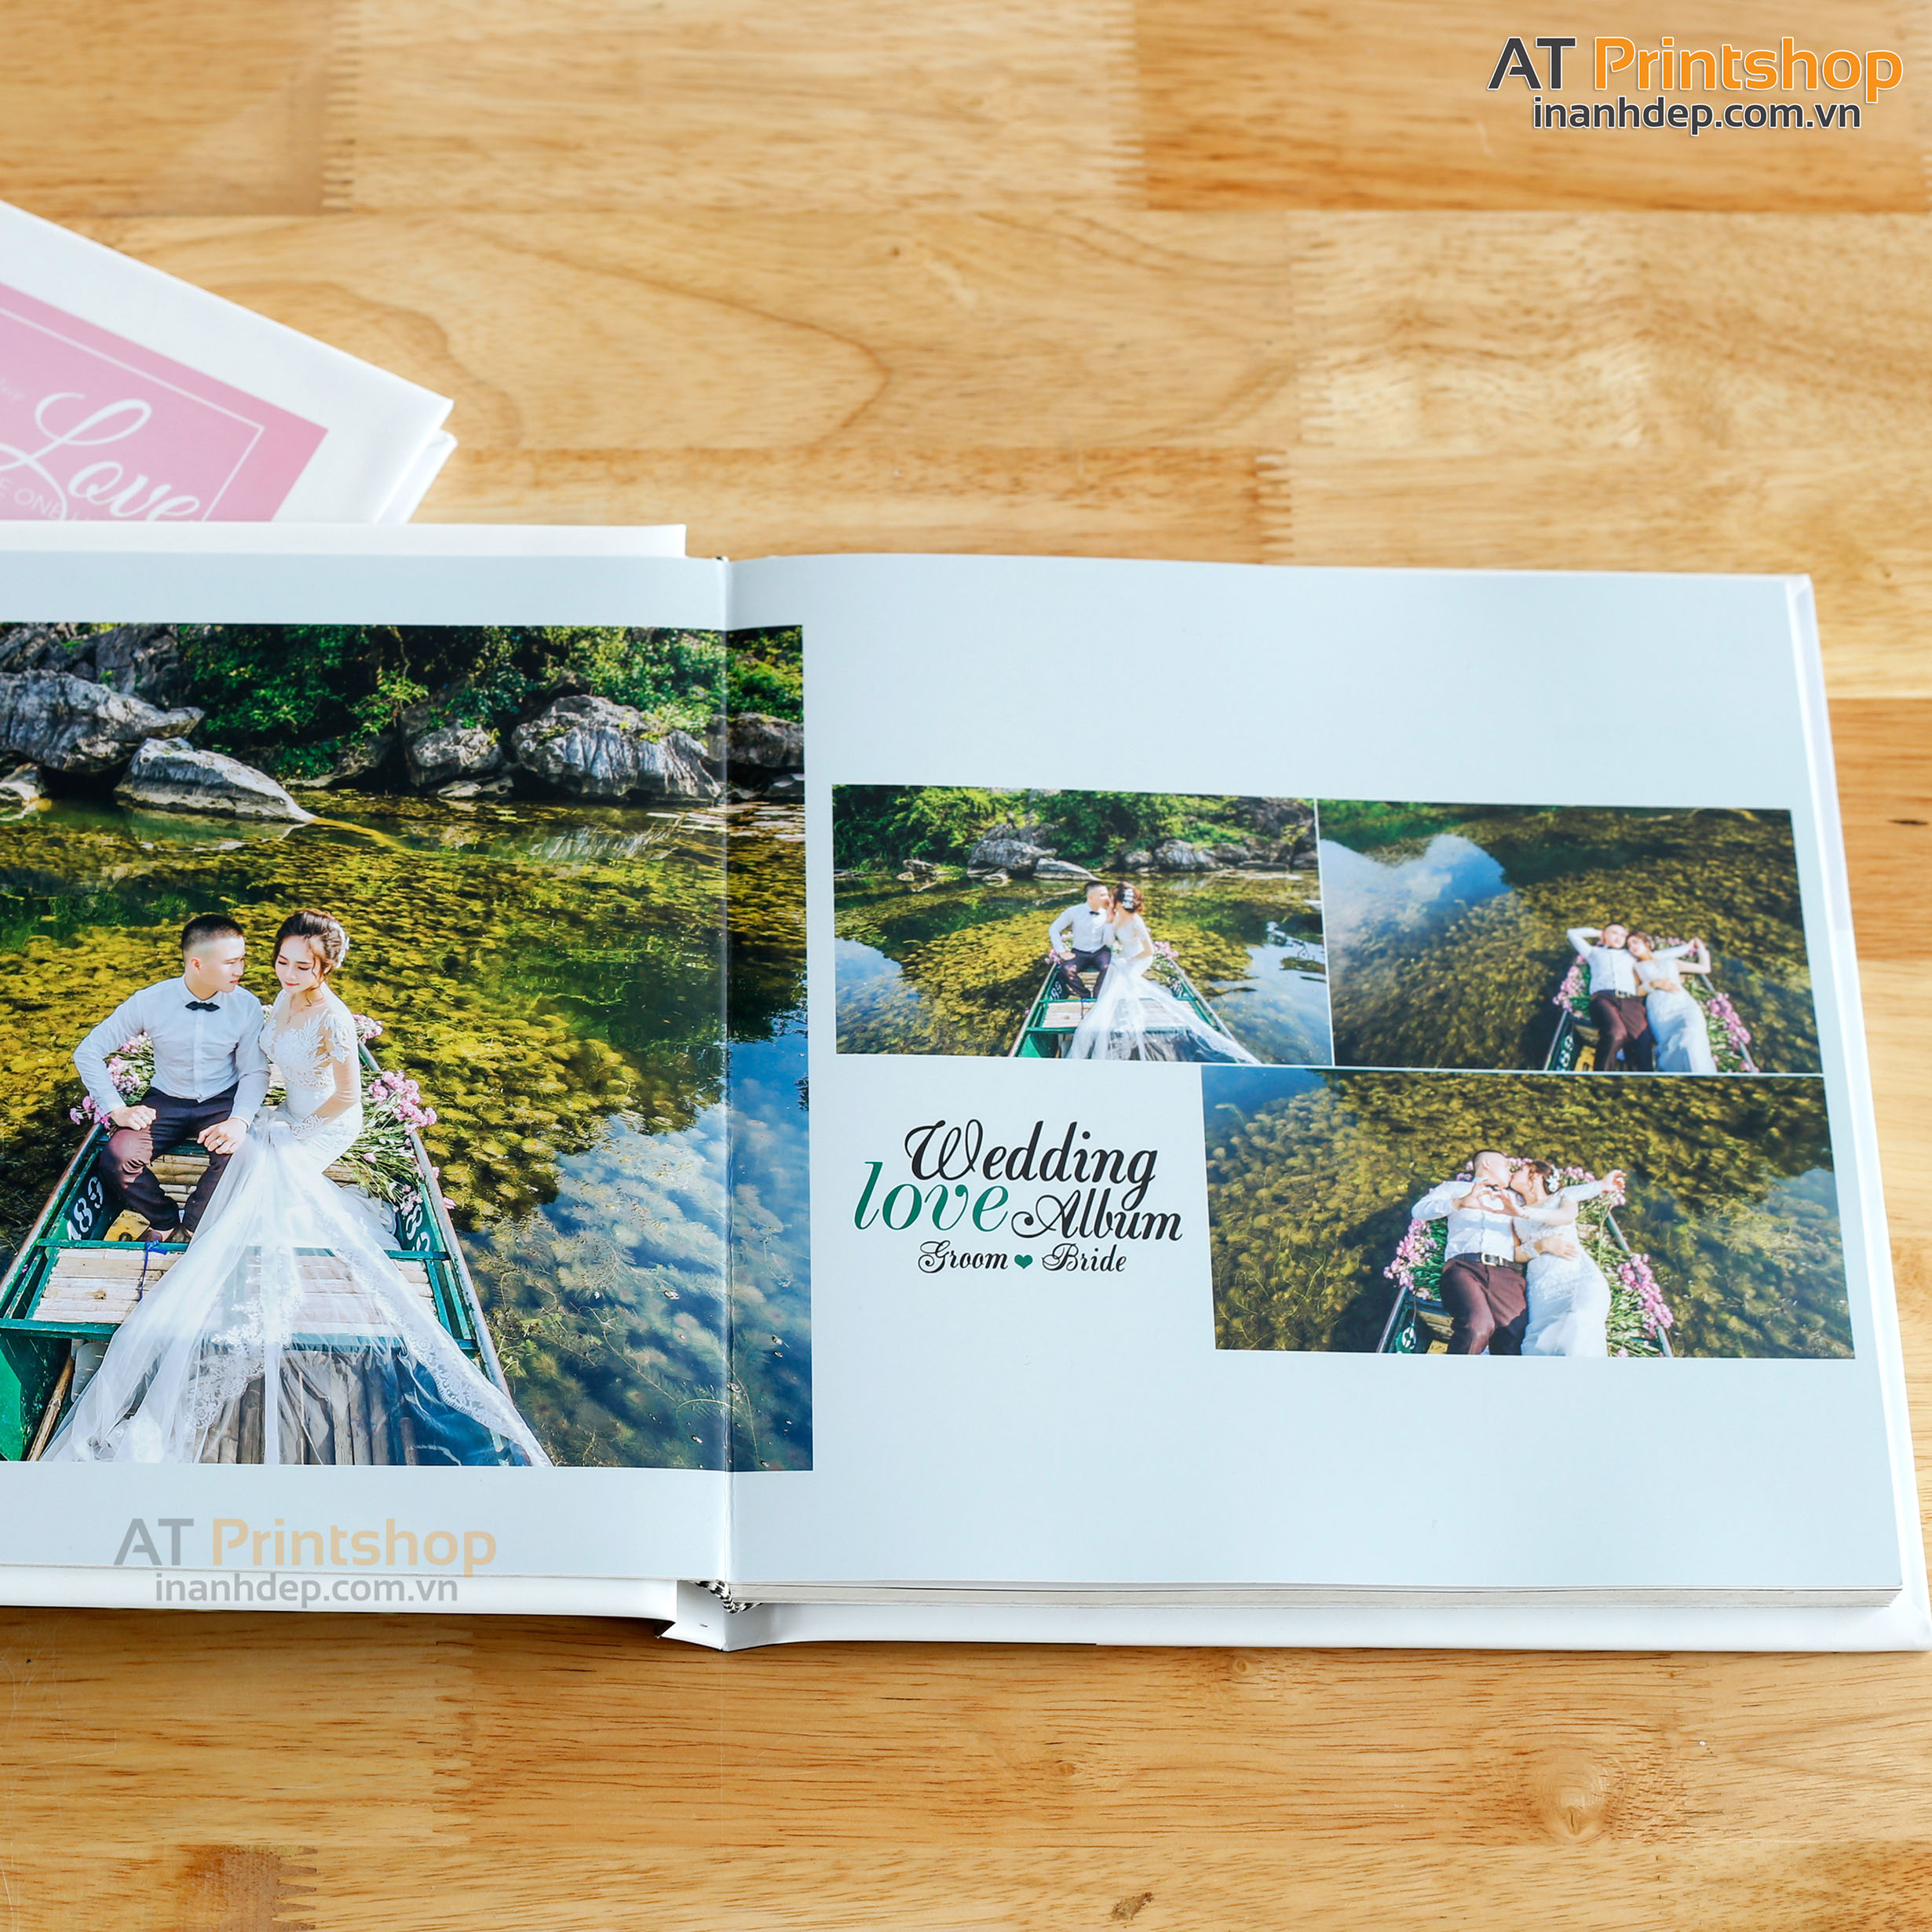 Photobook cưới sẽ là món quà tuyệt vời dành tặng cho bạn trai/bạn gái trong ngày cưới. Tại đây, chúng tôi cam kết mang lại cho bạn những bộ photobook đẹp nhất, đưa bạn trở lại kỷ niệm ngọt ngào của ngày cưới.